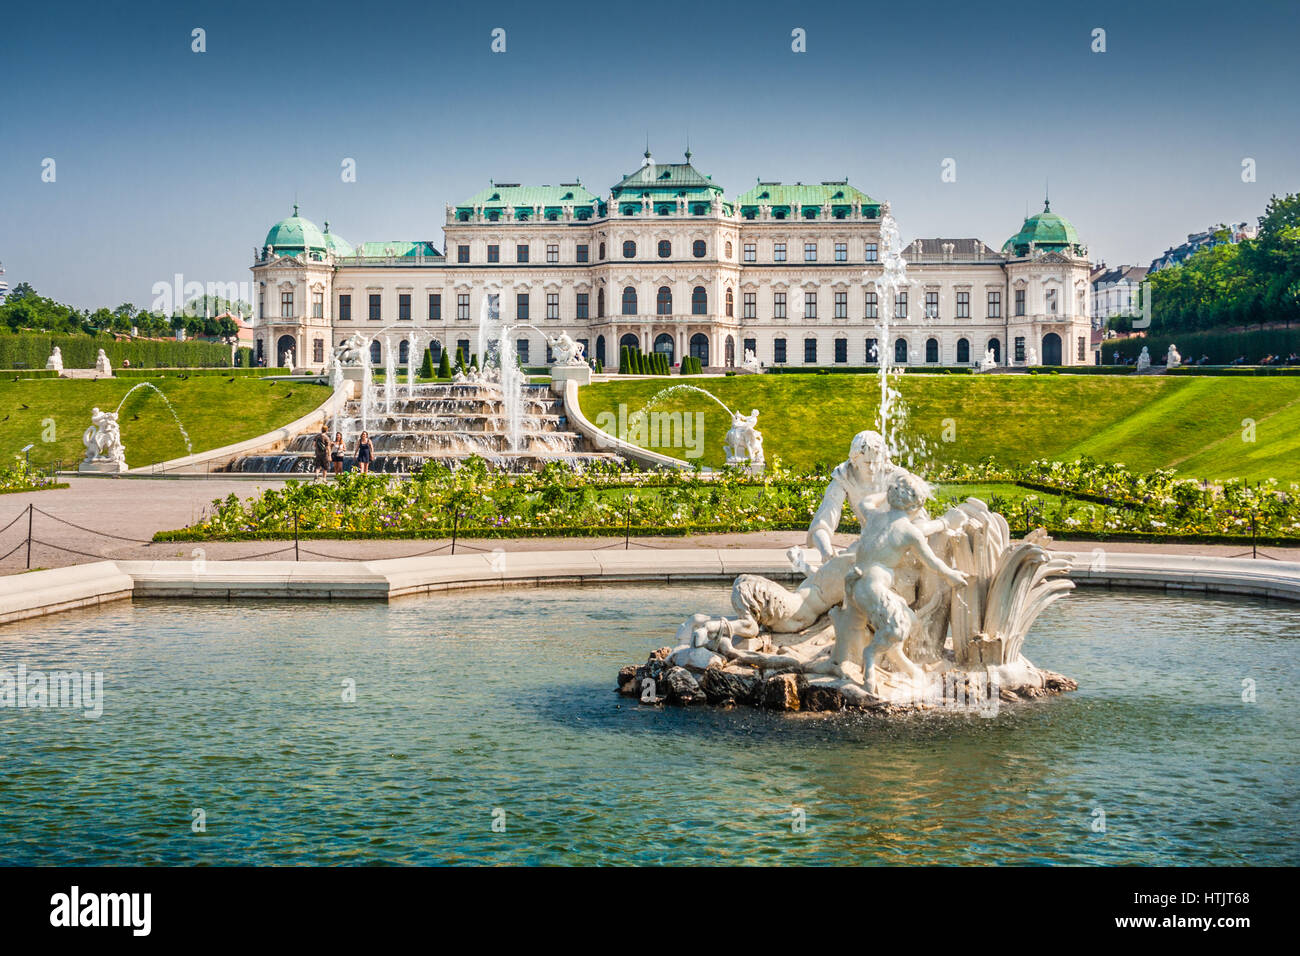 Hermosa vista del famoso Palacio Belvedere, construido por Johann Lukas von Hildebrandt como residencia de verano para el Príncipe Eugenio de Saboya, en Viena, Austria. Foto de stock